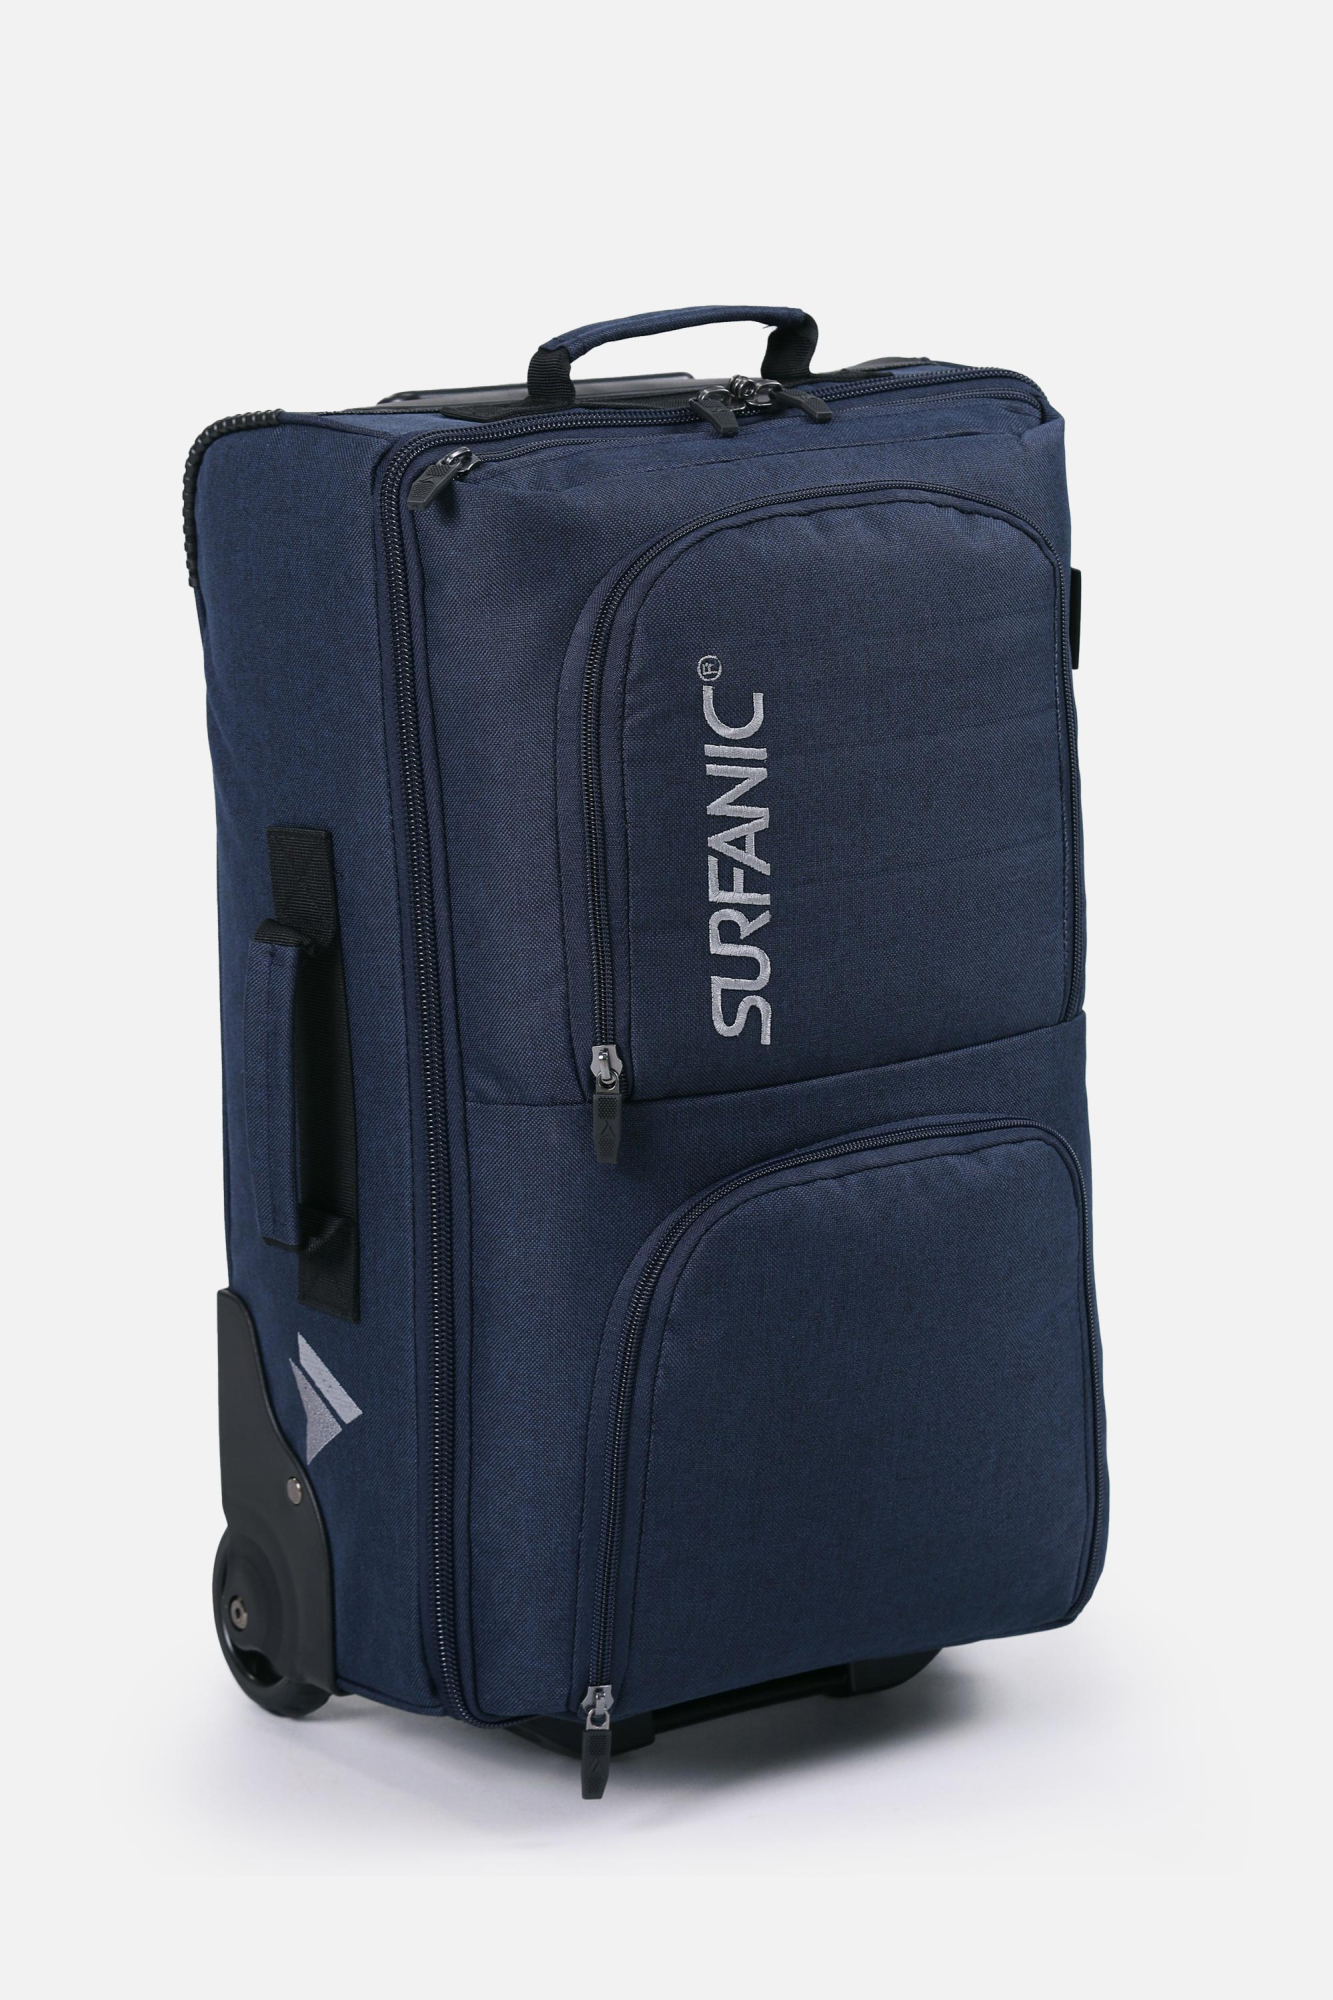 Surfanic Unisex Maxim 40 Roller Bag Blue - Size: 40 Litre